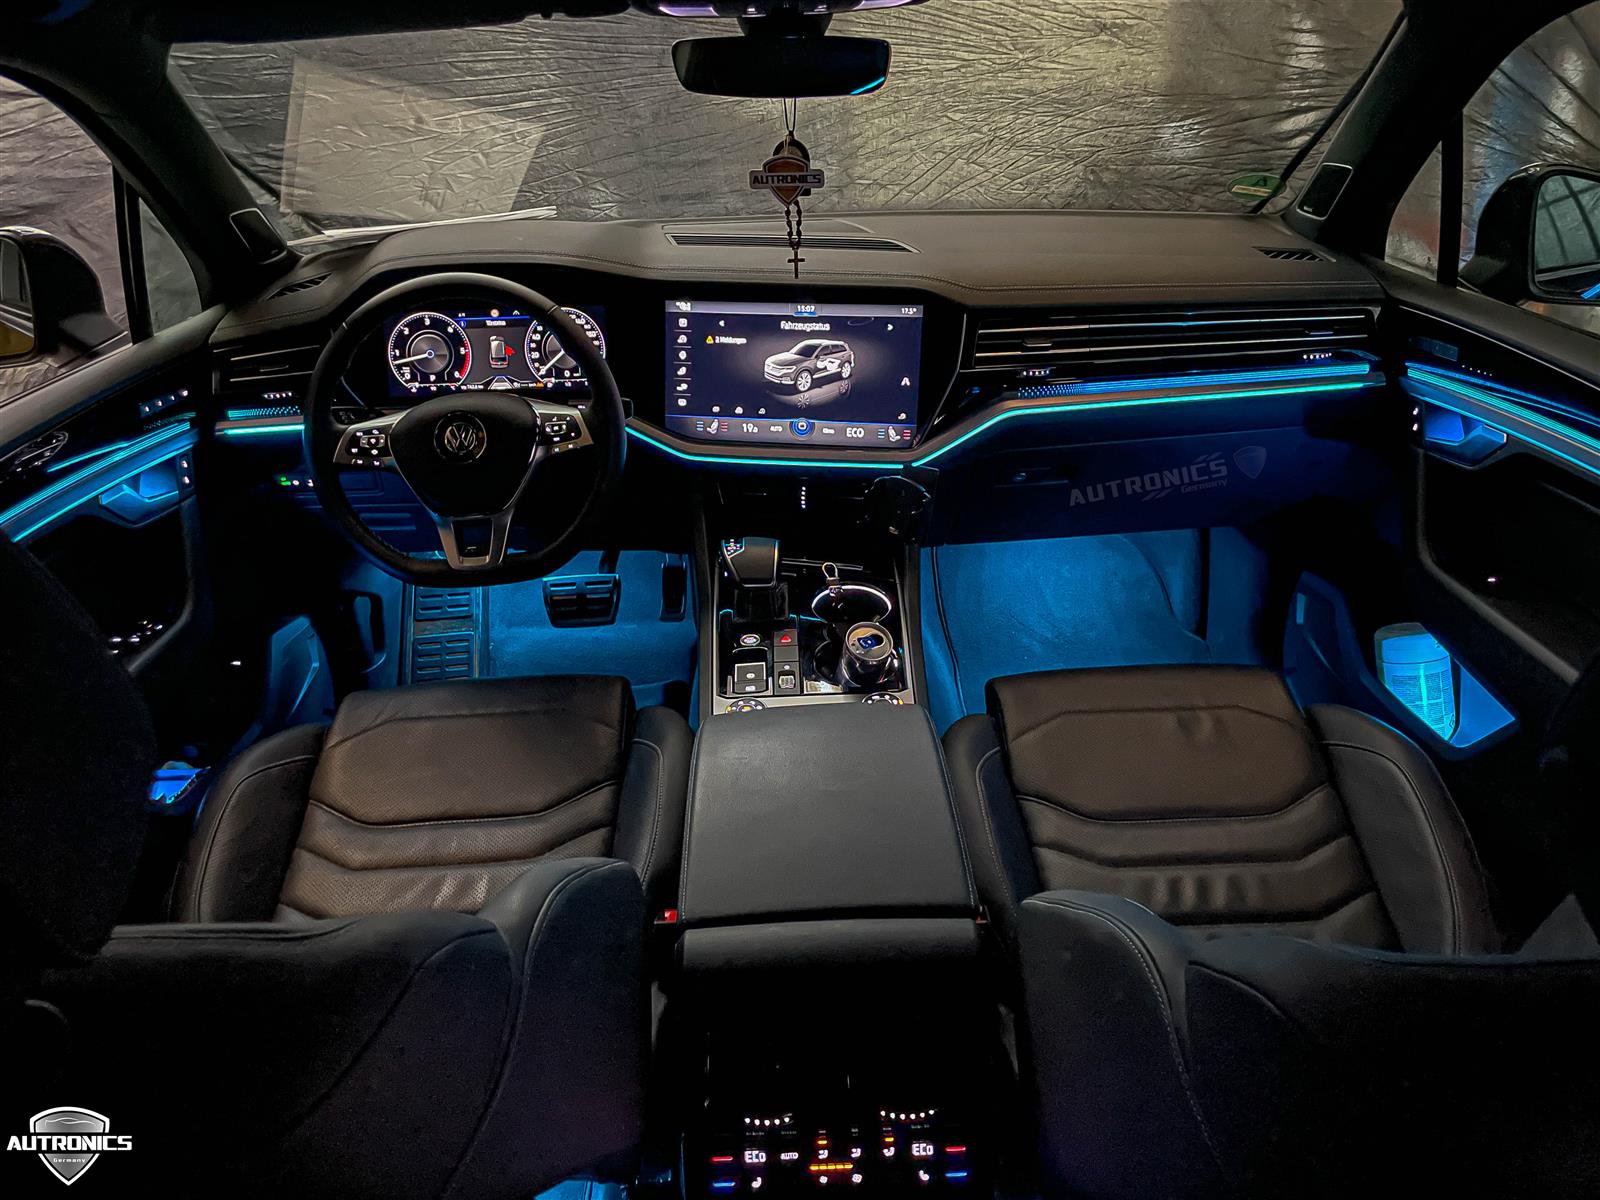 Ambientebeleuchtung Nachrüsten im Auto Innenraumbeleuchtung Beleuchtung geeignet für VW Touareg 3. Generation - 08